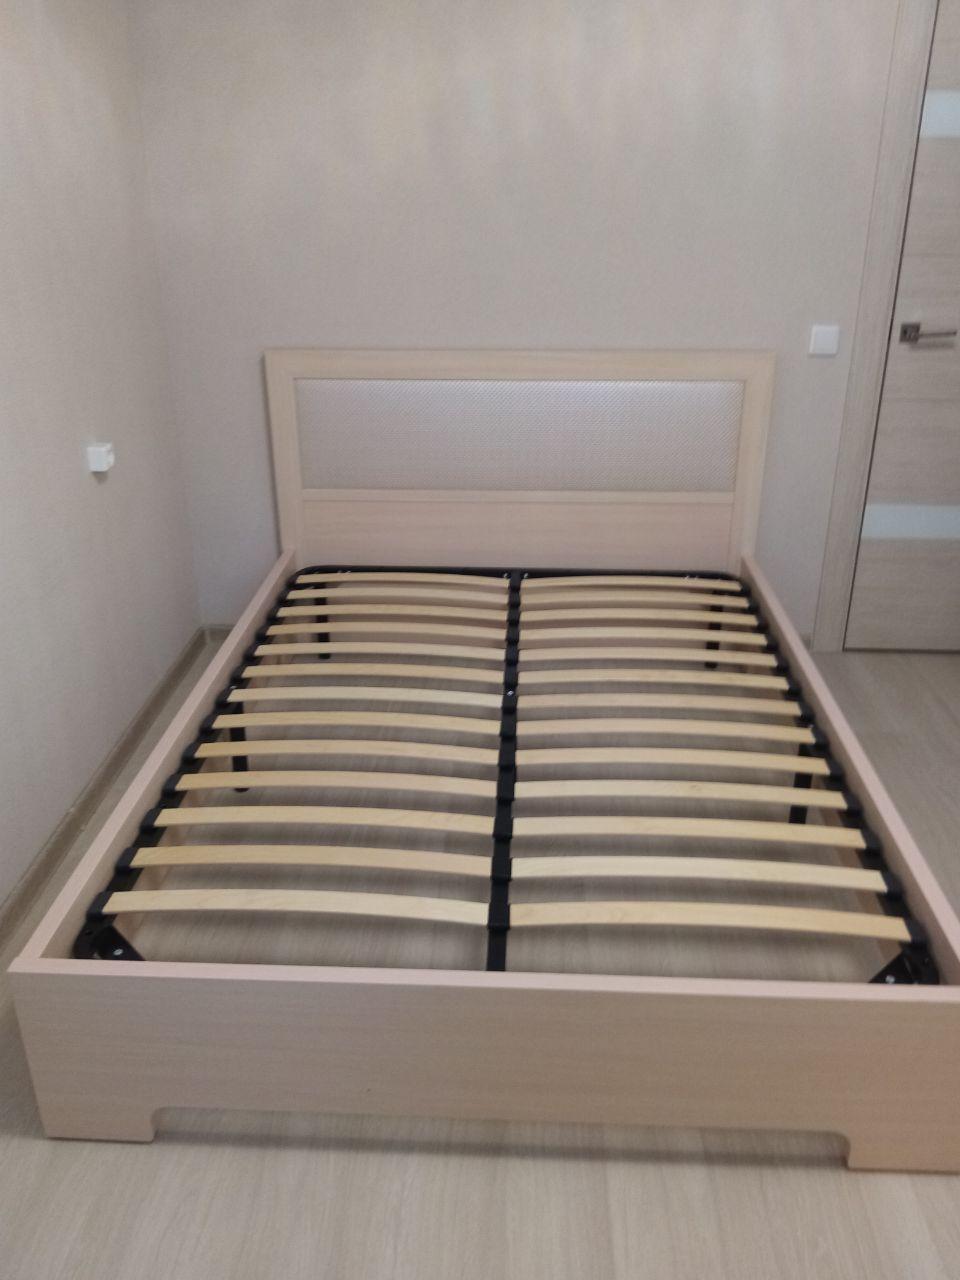 Полутораспальная кровать "Мальта" 120 х 200 с подъемным механизмом цвет сонома